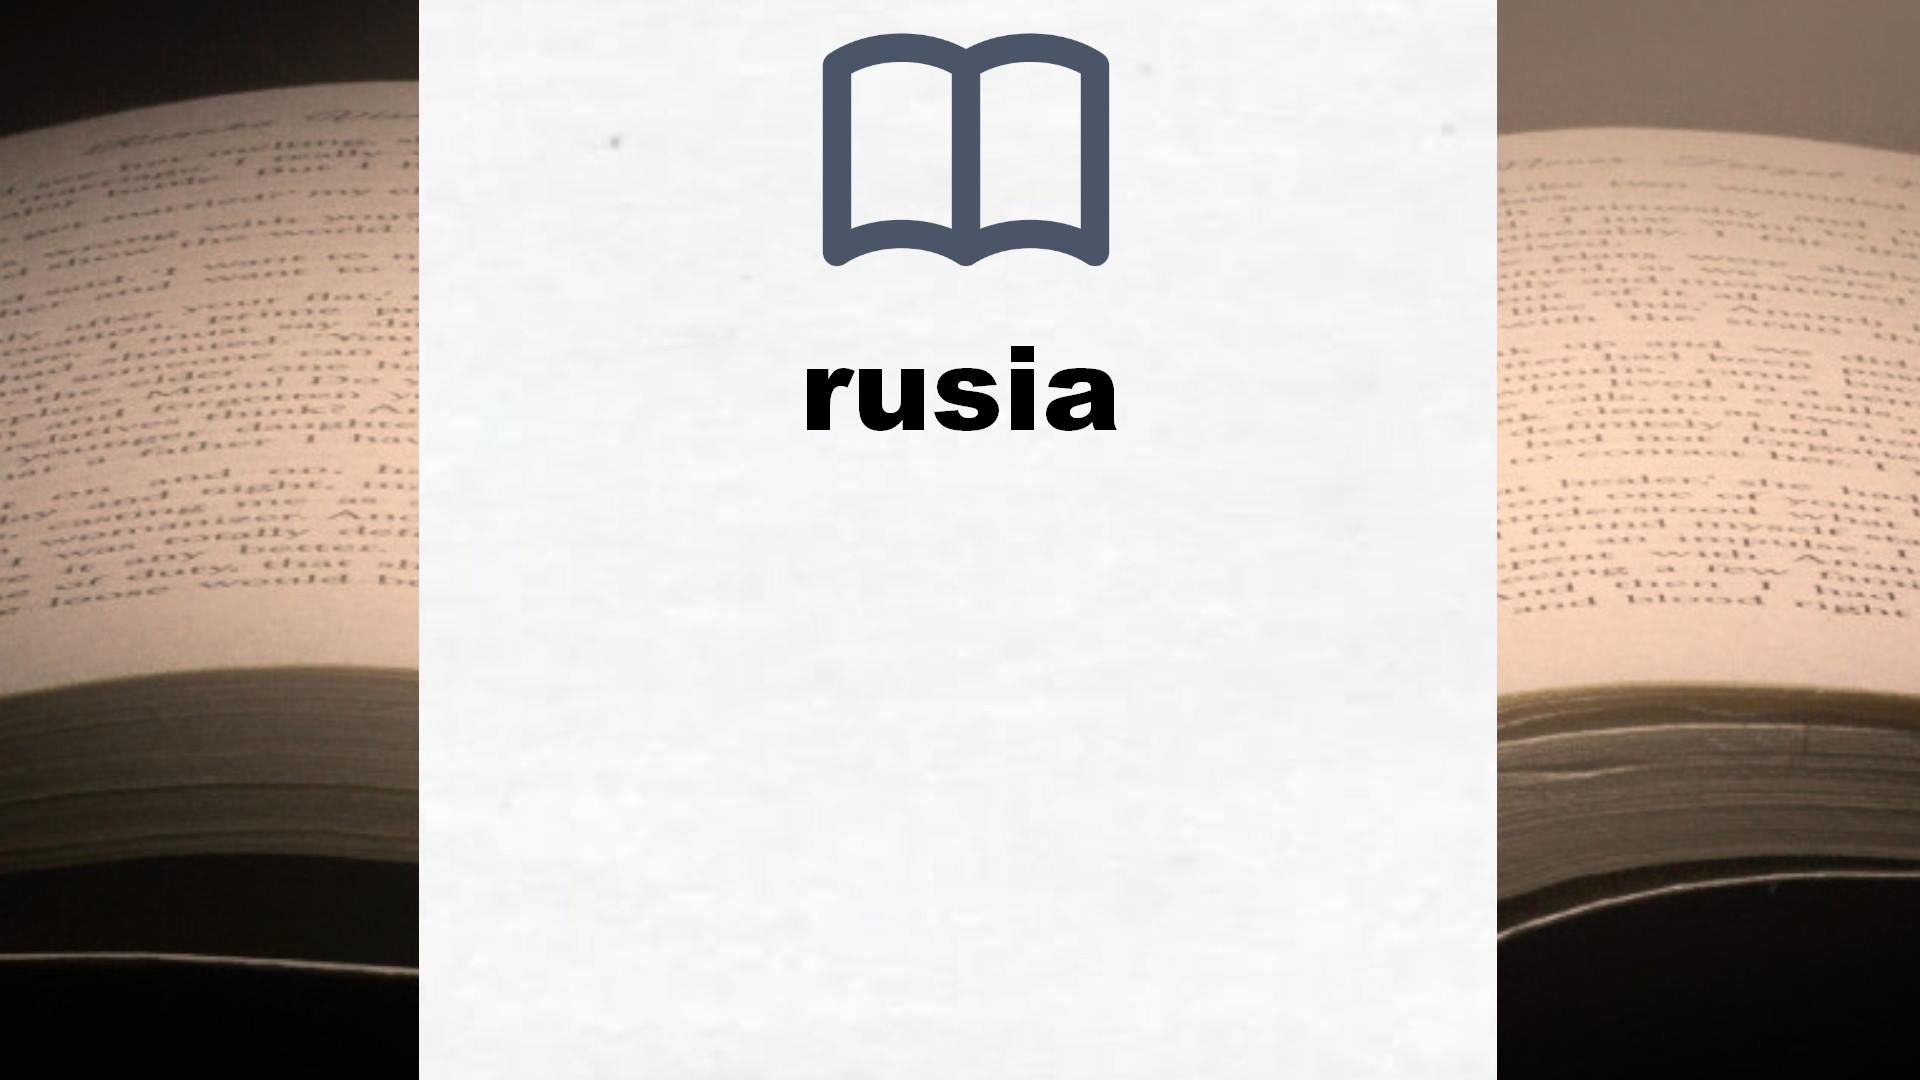 Libros sobre rusia